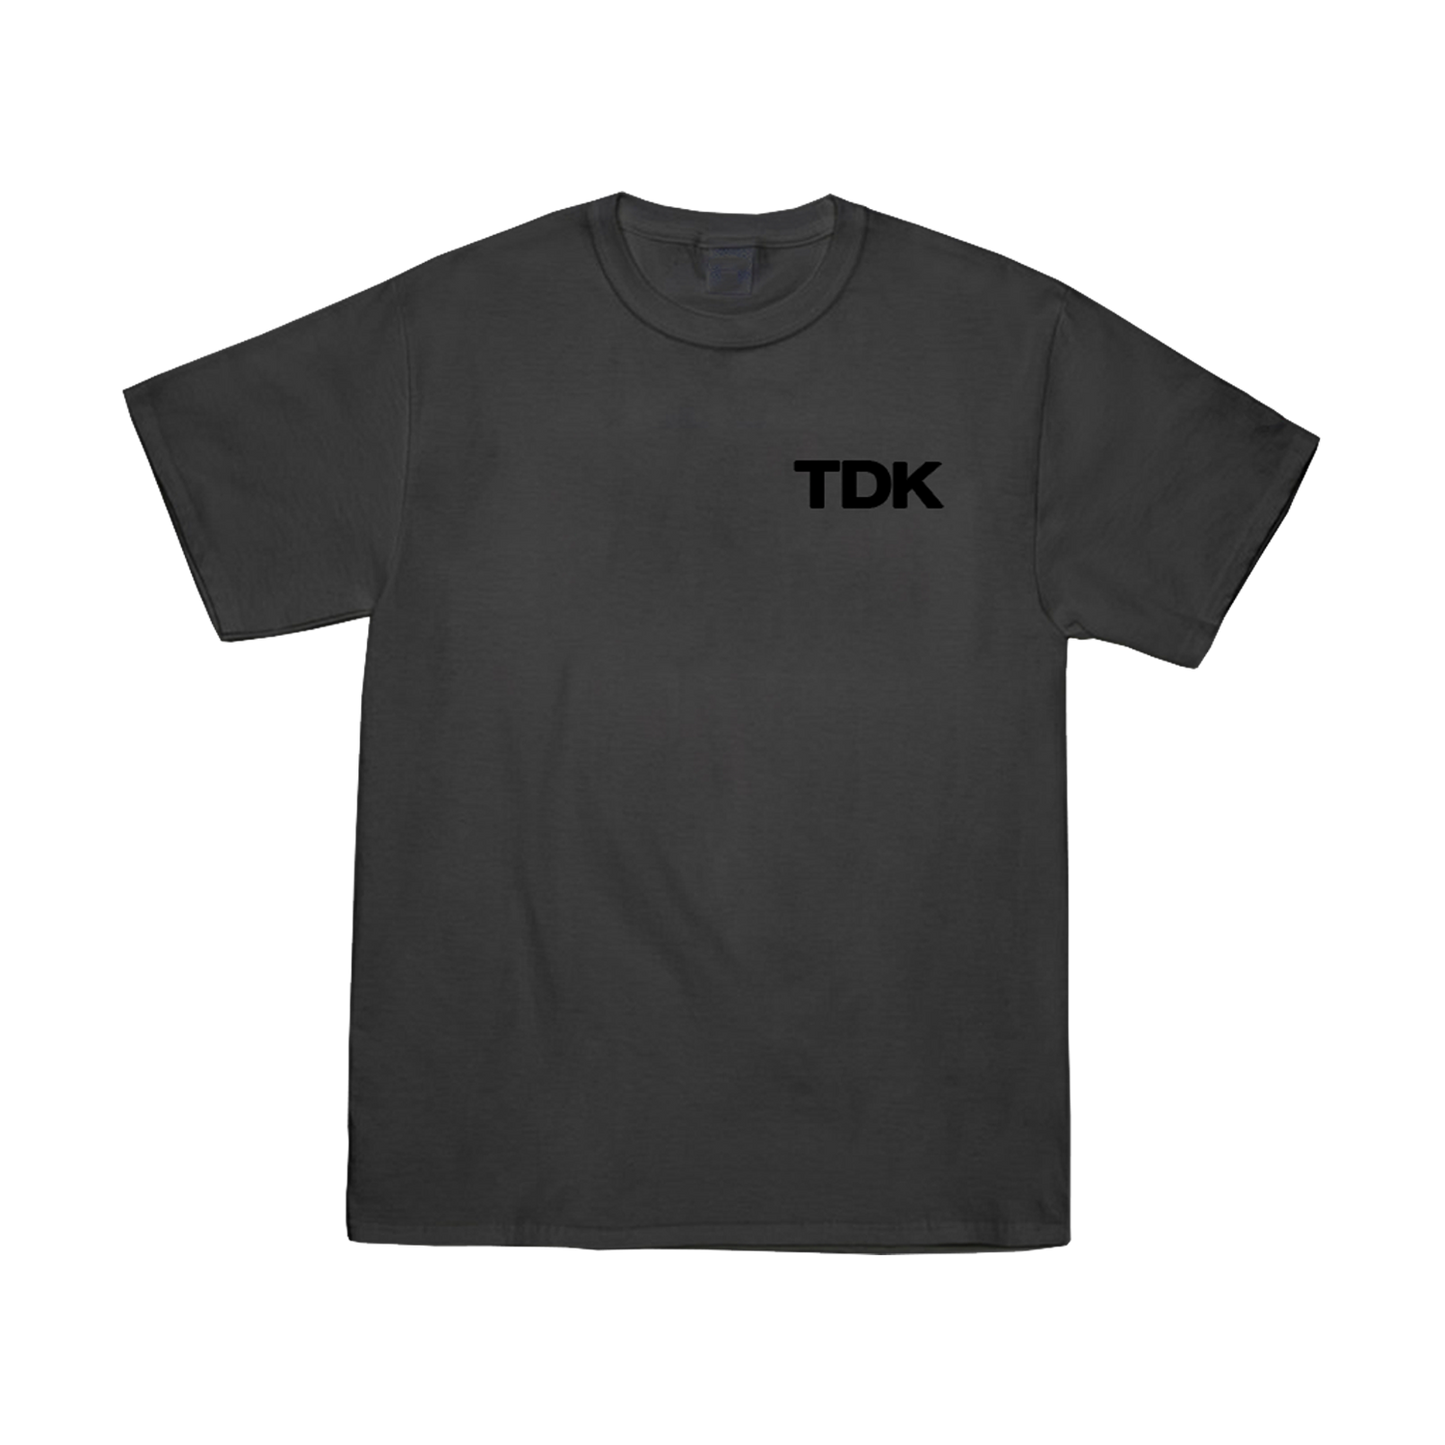 TDK Rubber Essentials (Black/Charcoal)